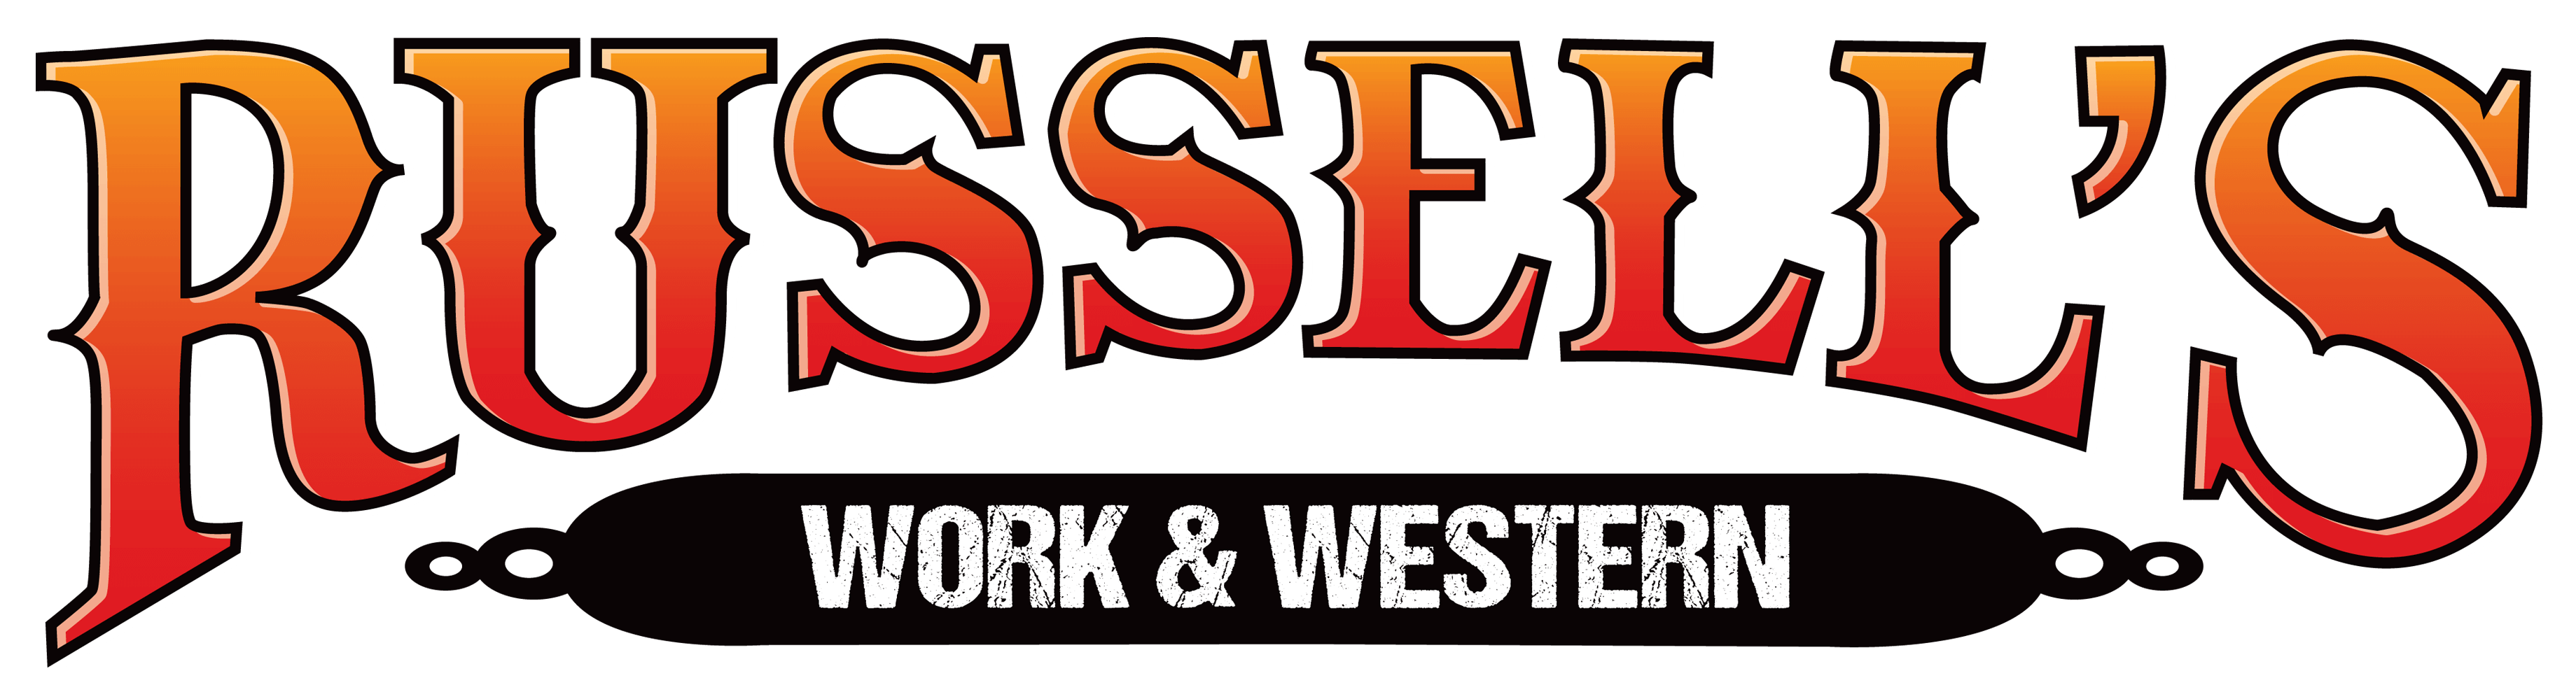 Russell's Western Wear